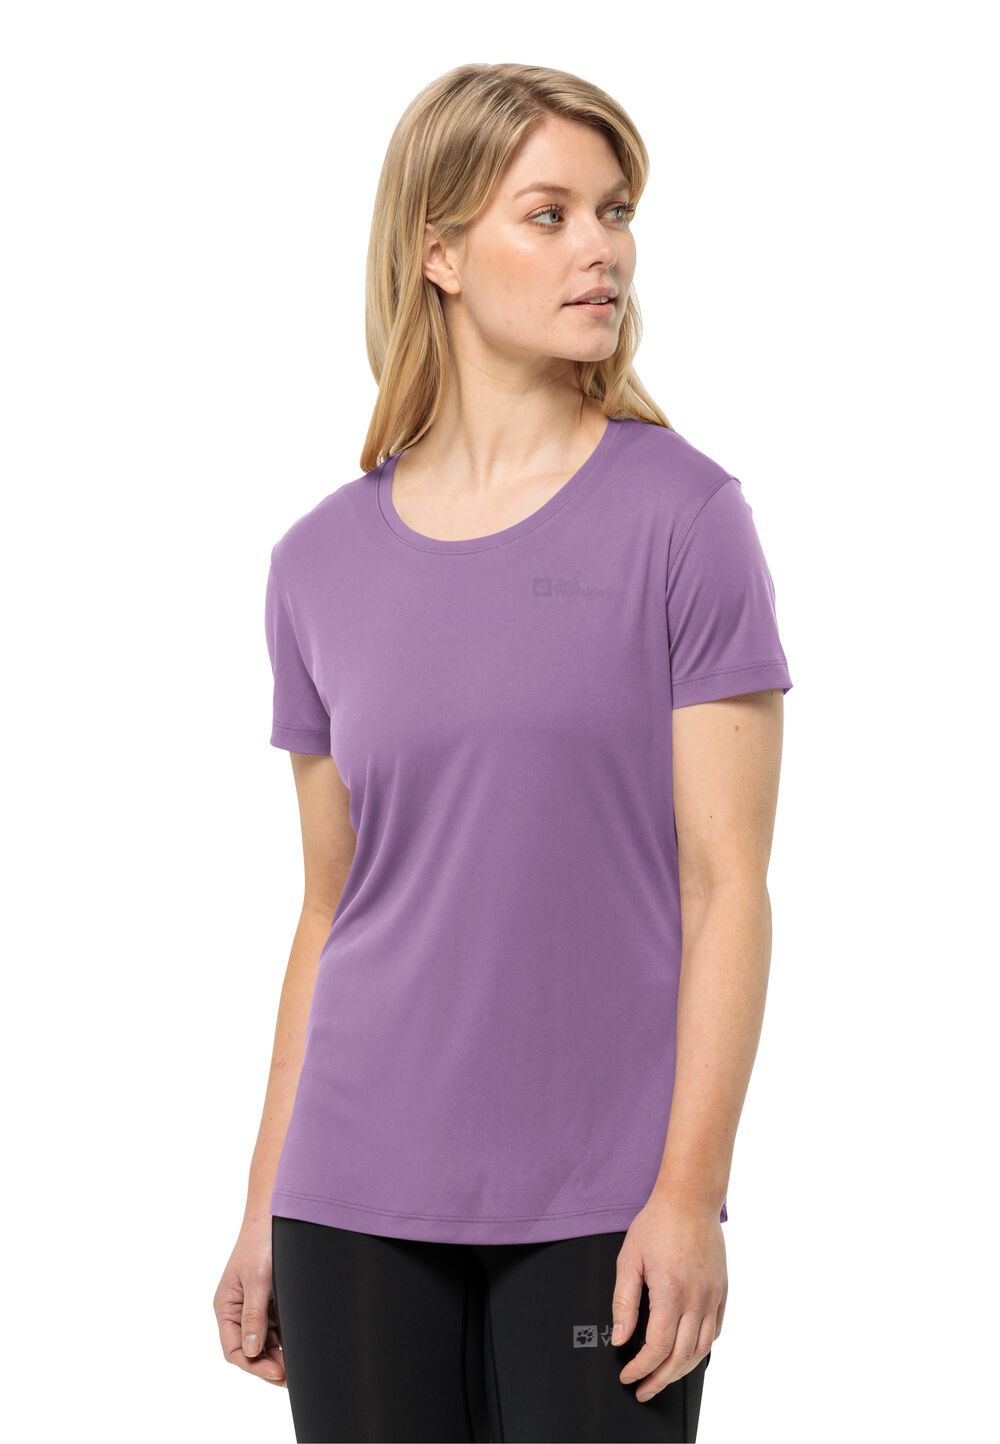 Jack Wolfskin Tech T-Shirt Women Functioneel shirt Dames XXL velvet